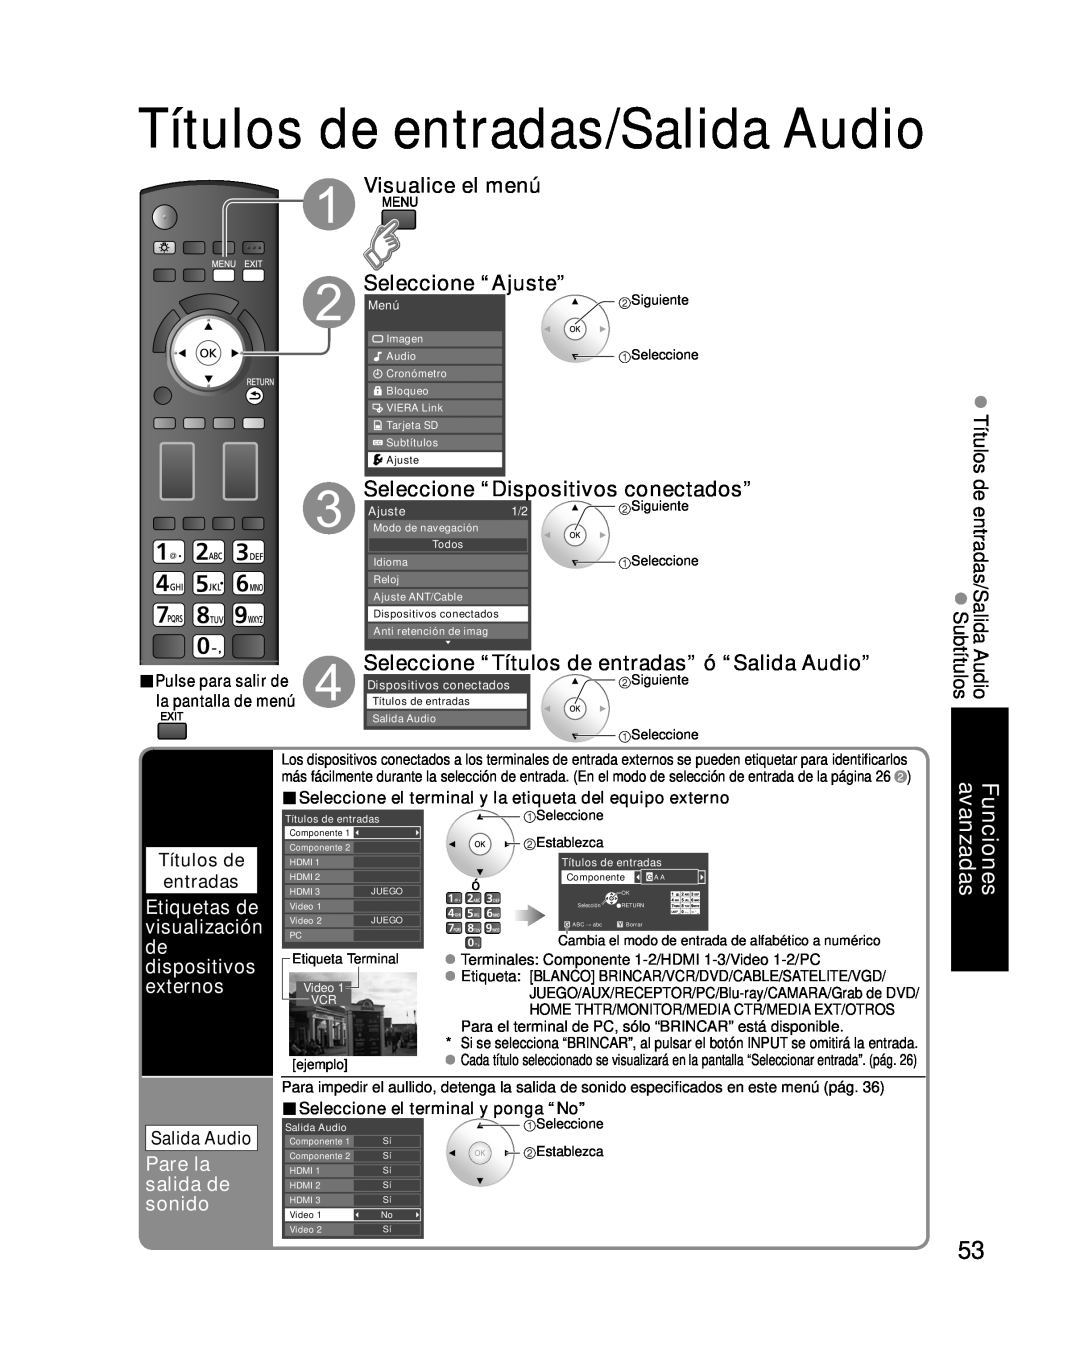 Panasonic TC-P46G10 Títulos de entradas/Salida Audio, Seleccione “Dispositivos conectados”, Pare la salida de sonido 